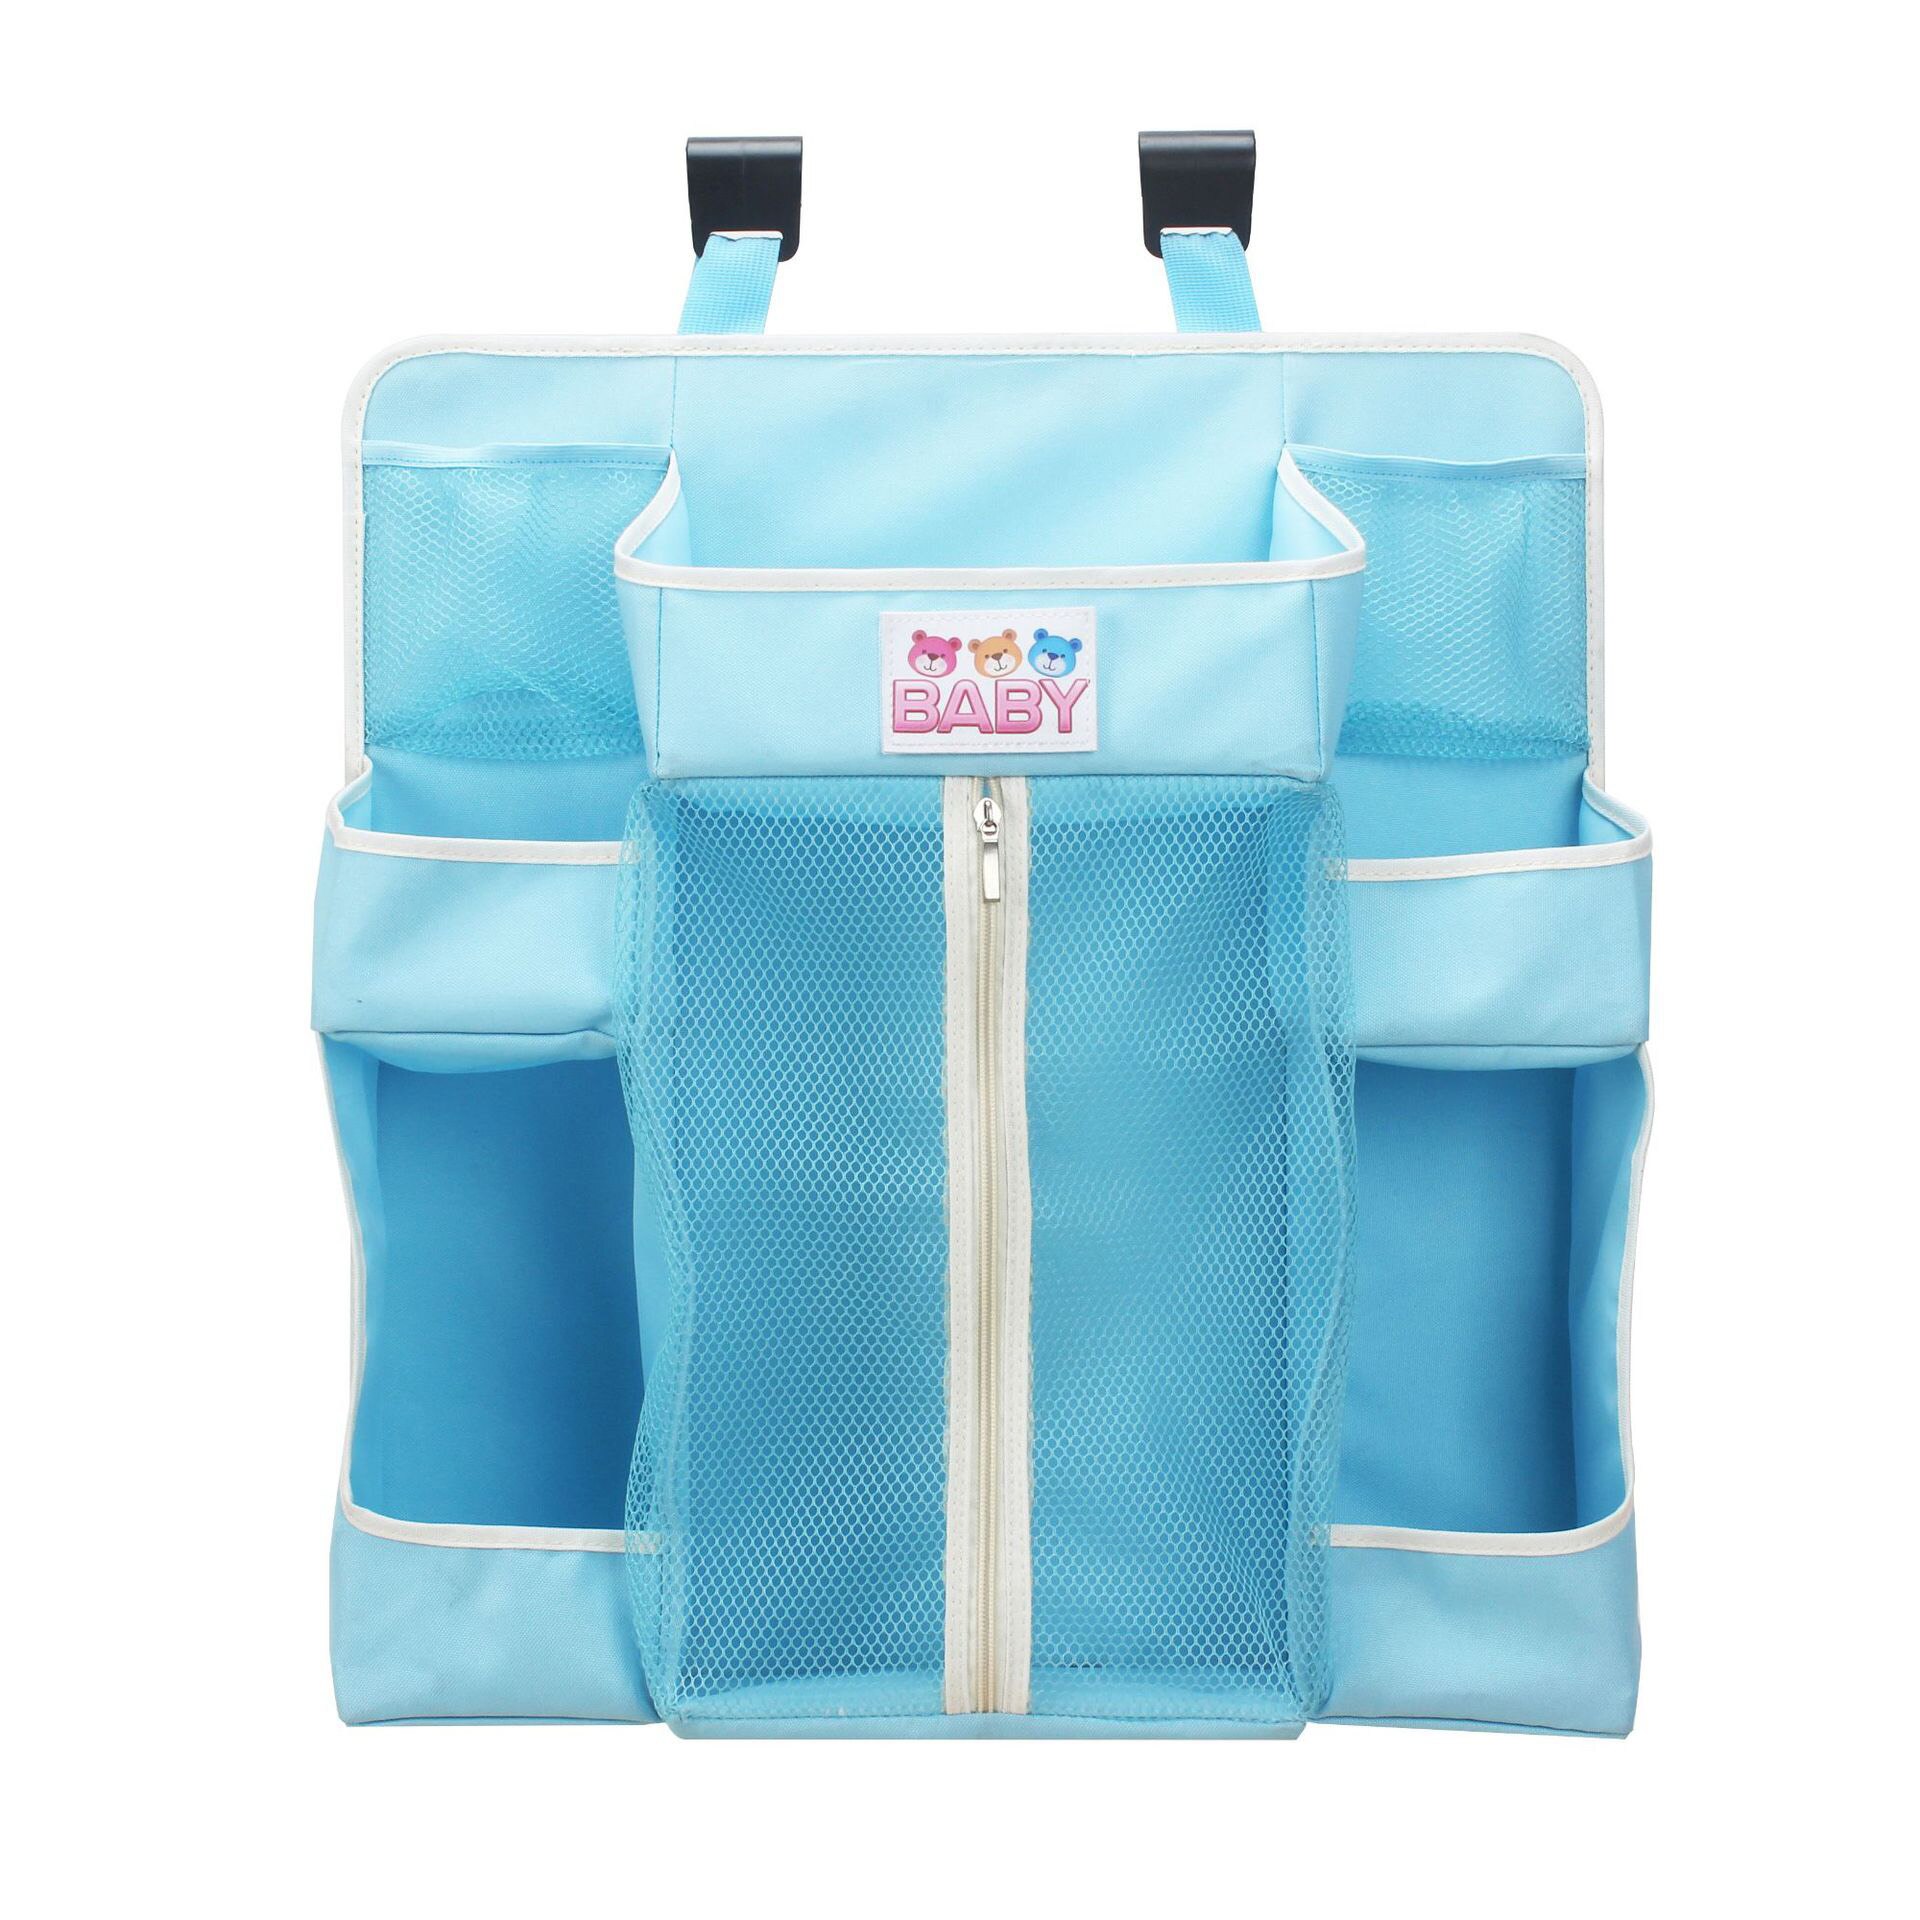 Baby sengetøj arrangør stor plads til nyfødte krybbe arrangør baby pleje uafhængig lukket ble opbevaringspose vugge taske sengetøj: Blå